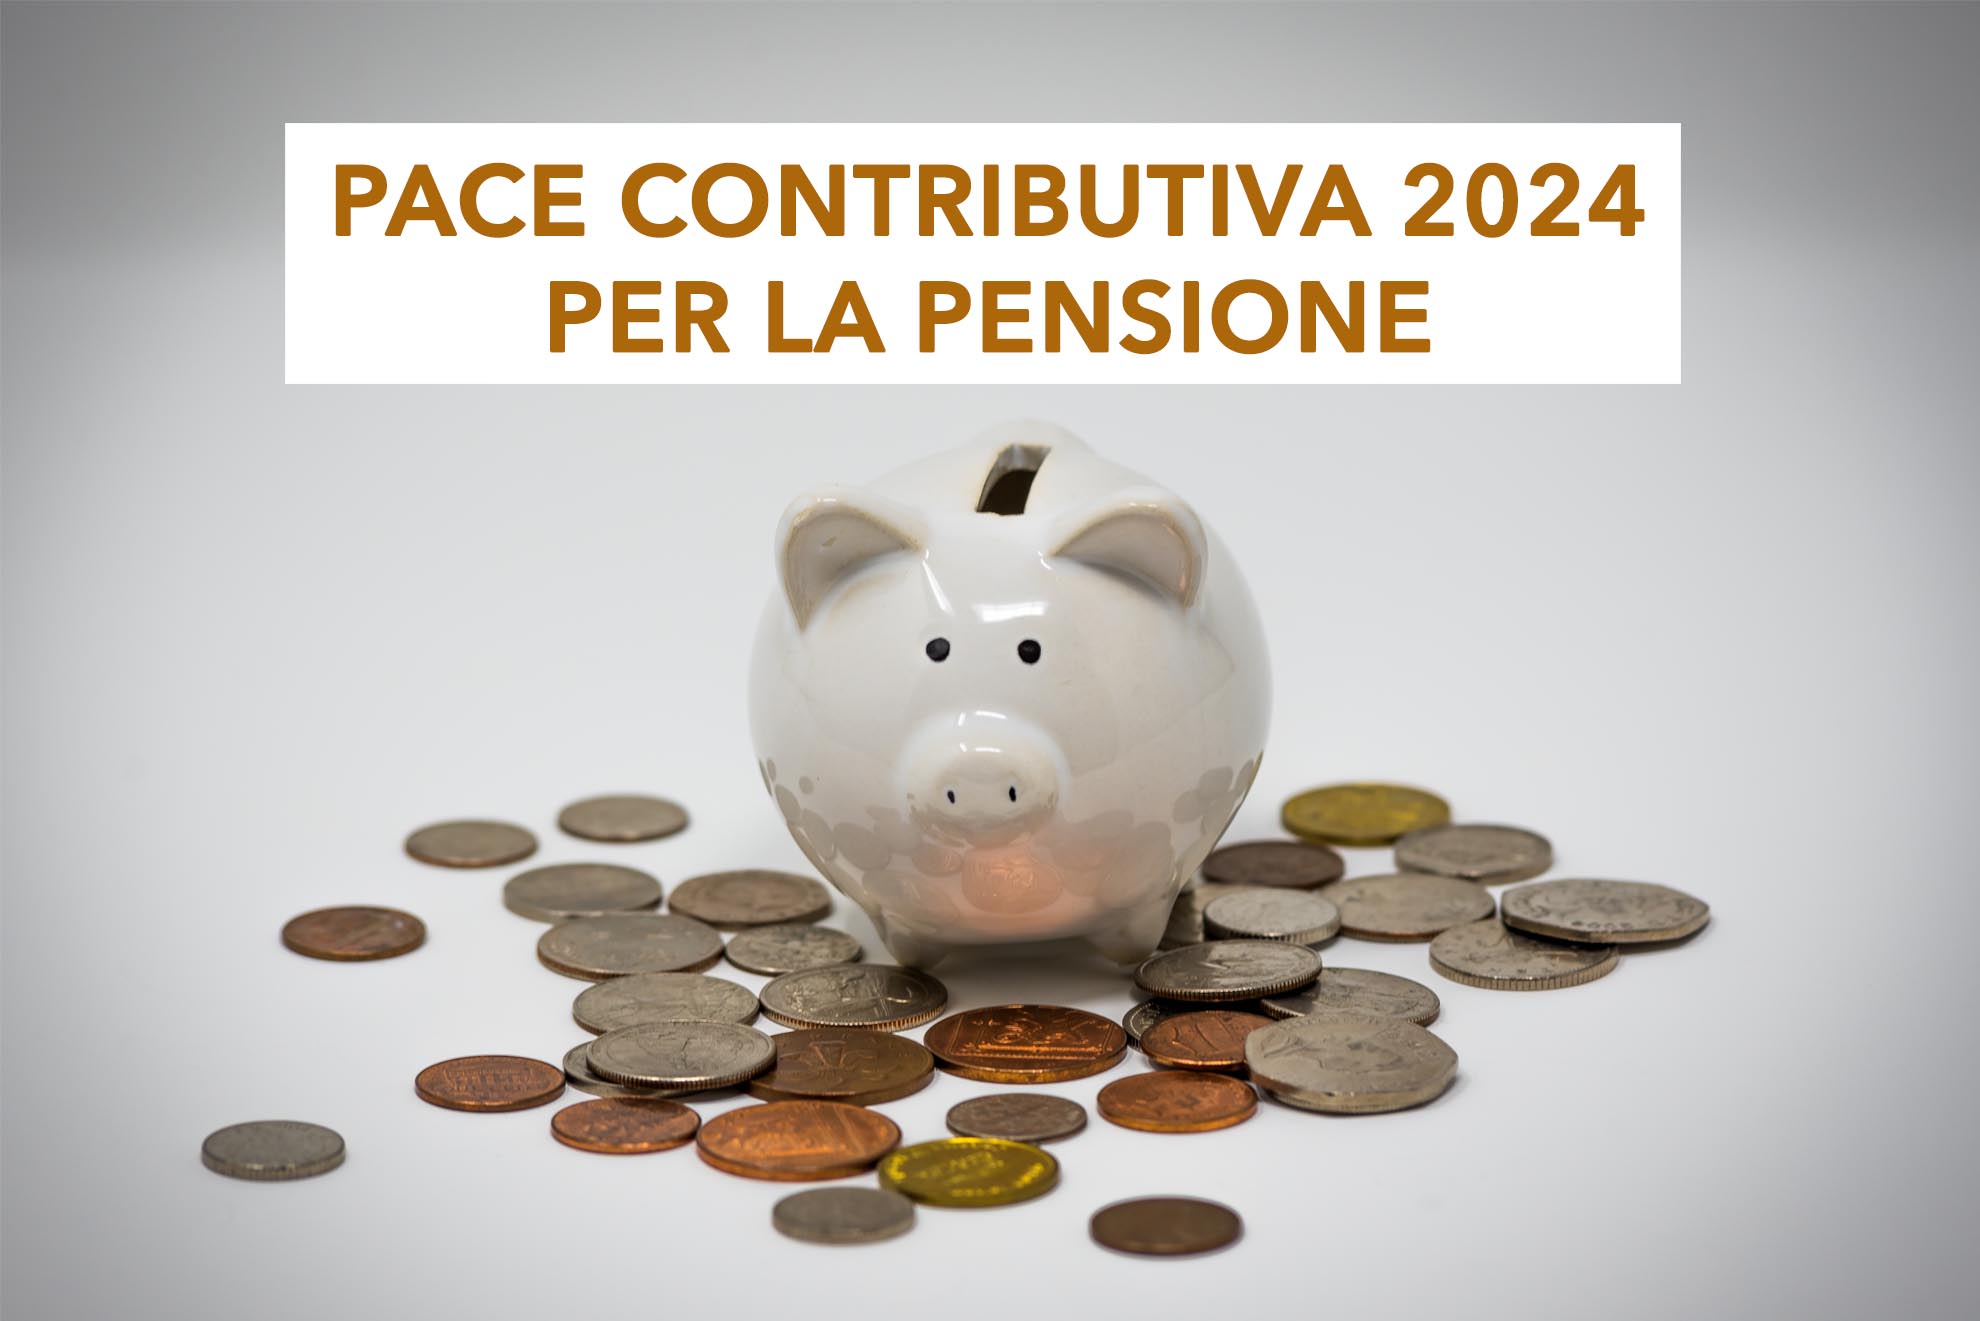 Pace contributiva 2024 per la pensione